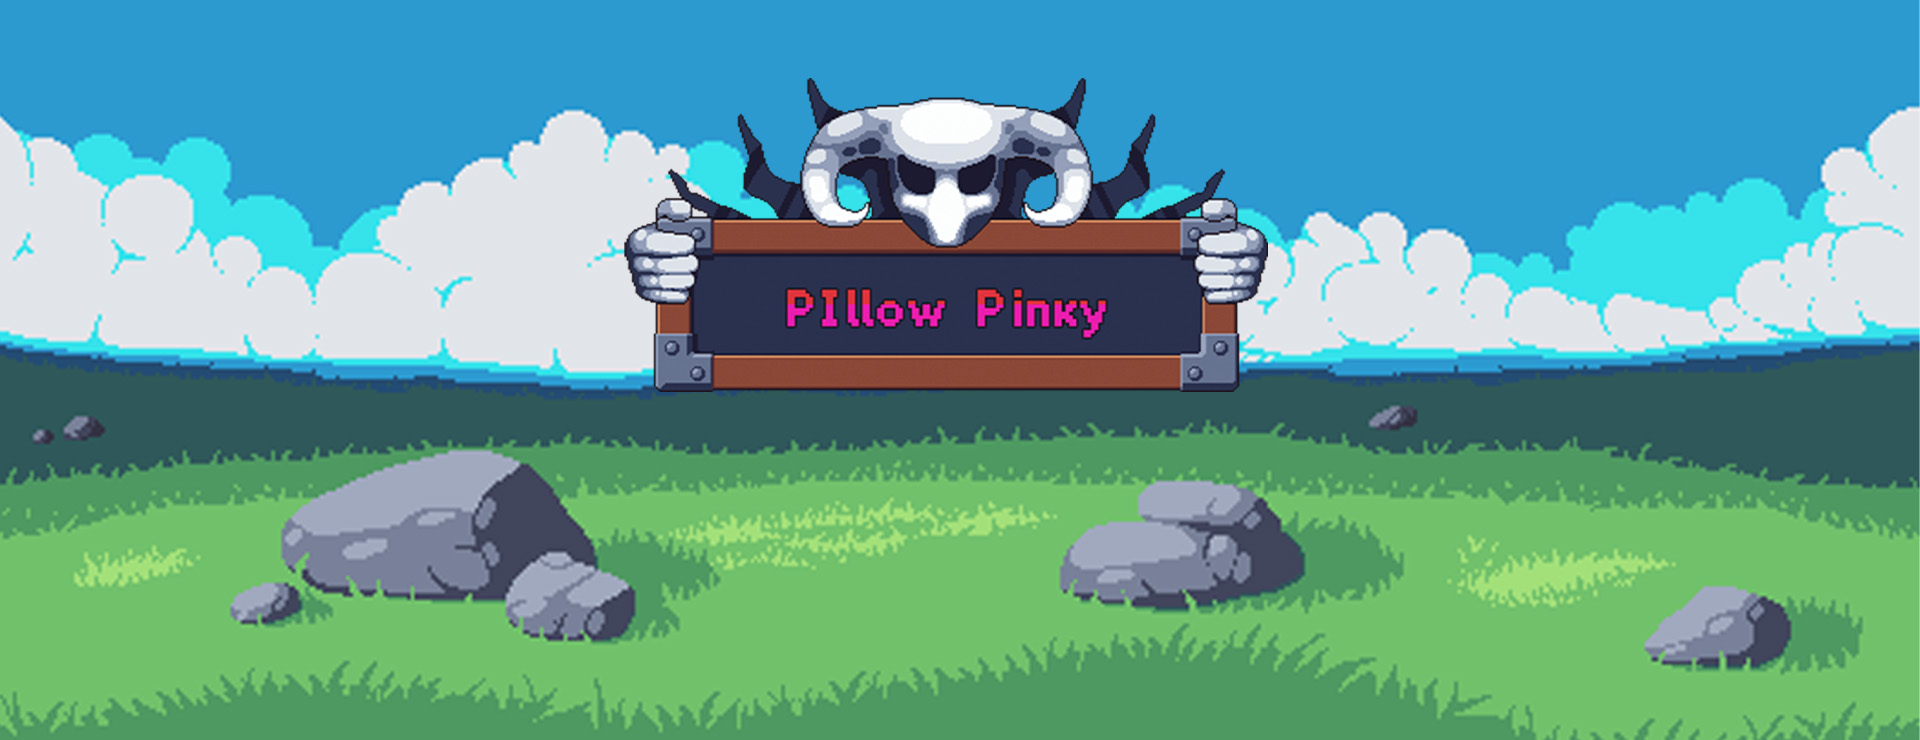 Pillow Pinky - Plataformas Juego